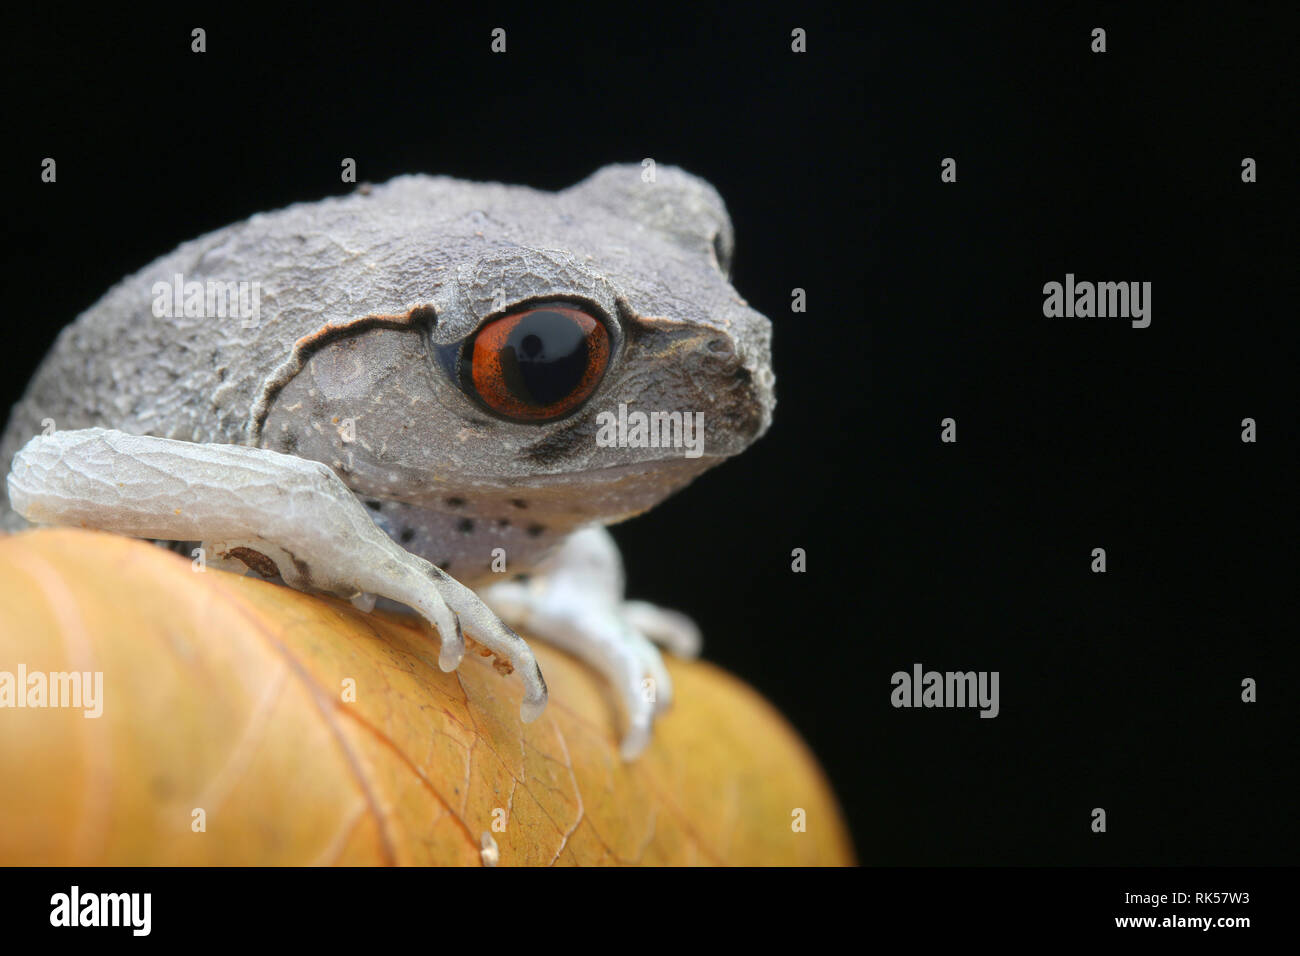 Spotted Litter Frog, Leptobrachium hendricksoni Stock Photo